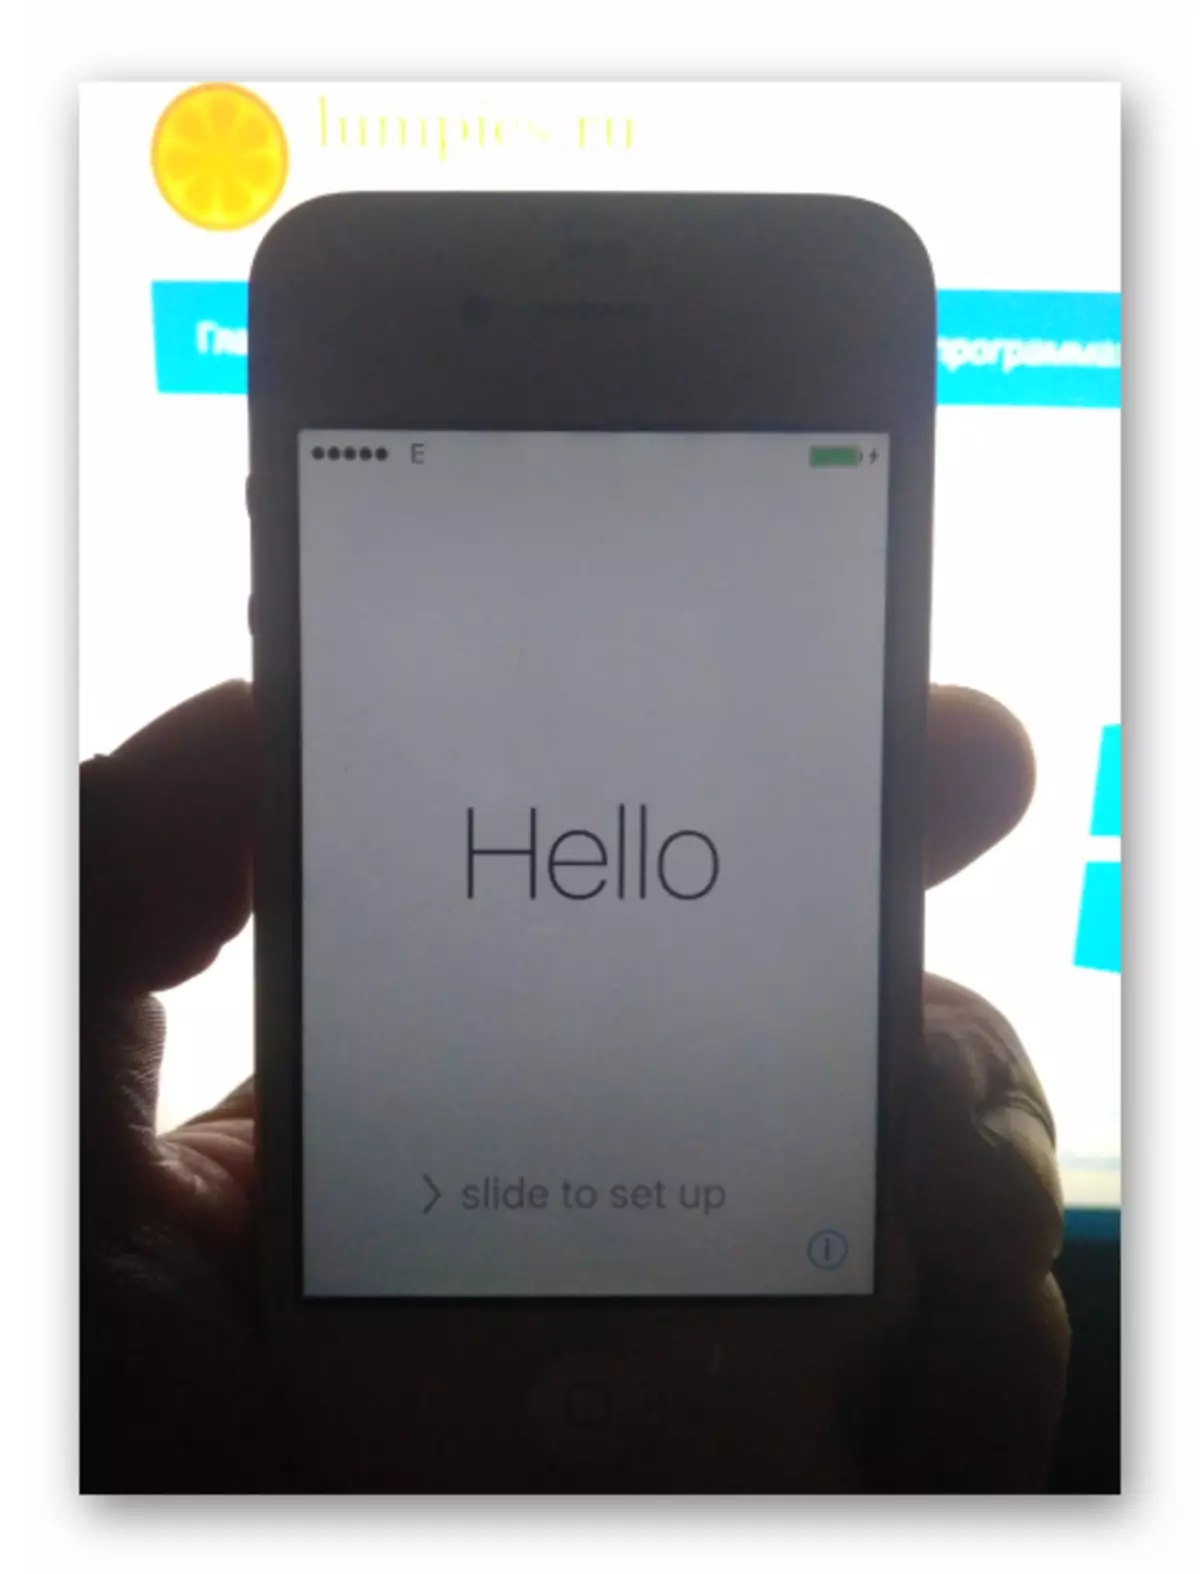 Apple iPhone 4s Avvio iOS dopo il firmware dell'apparato tramite iTunes